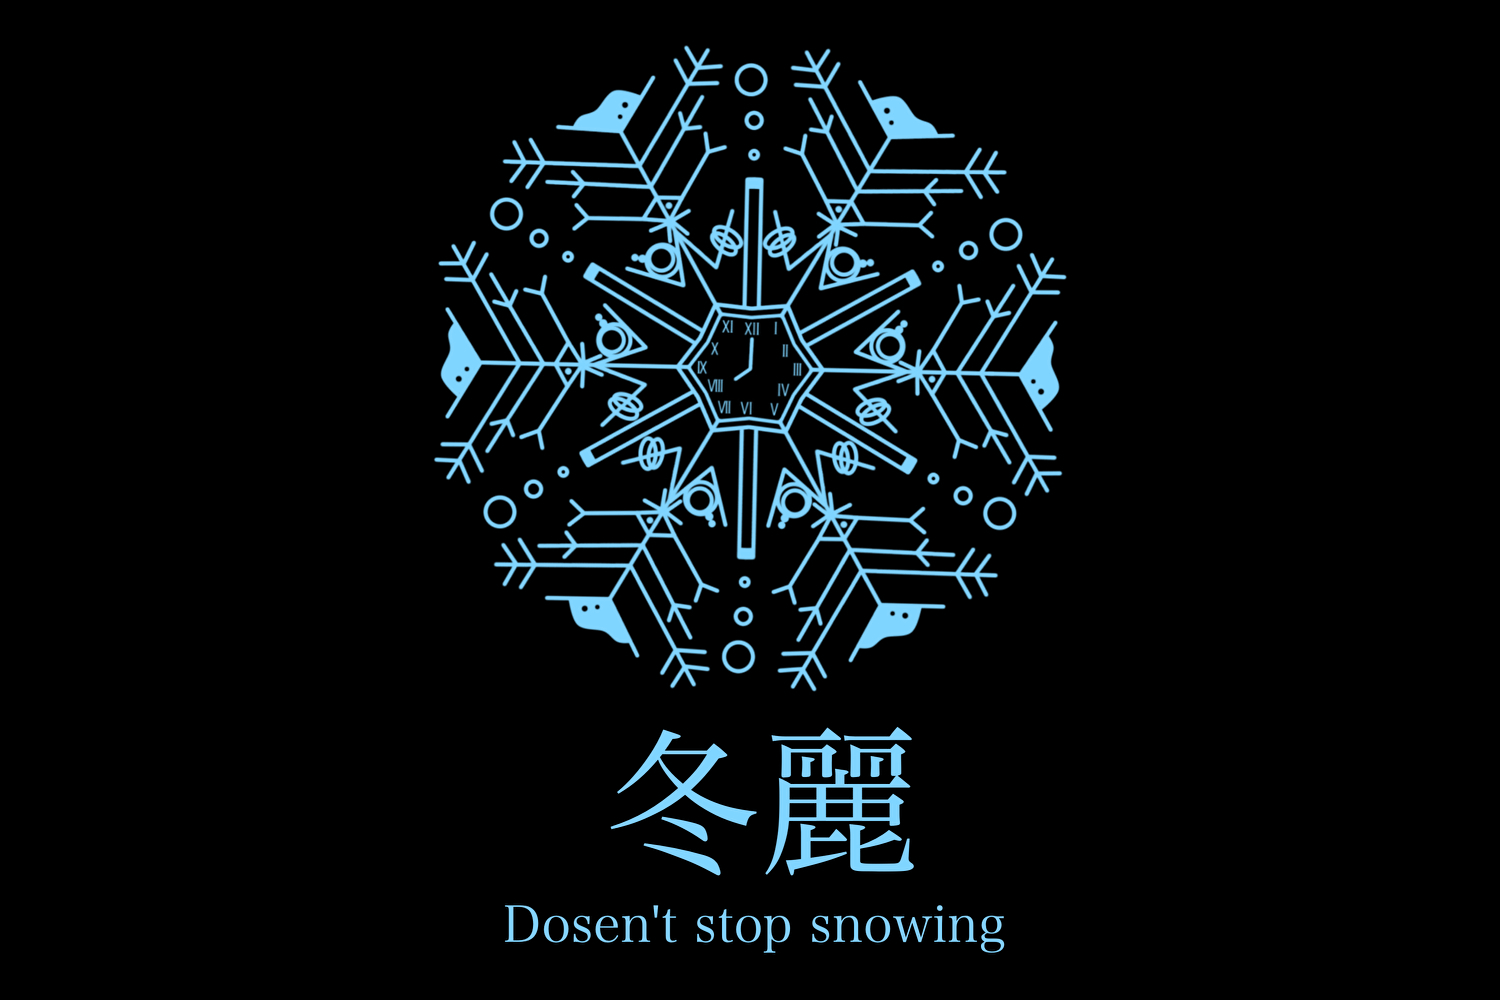 冬麗 -doesn't stop snowing-